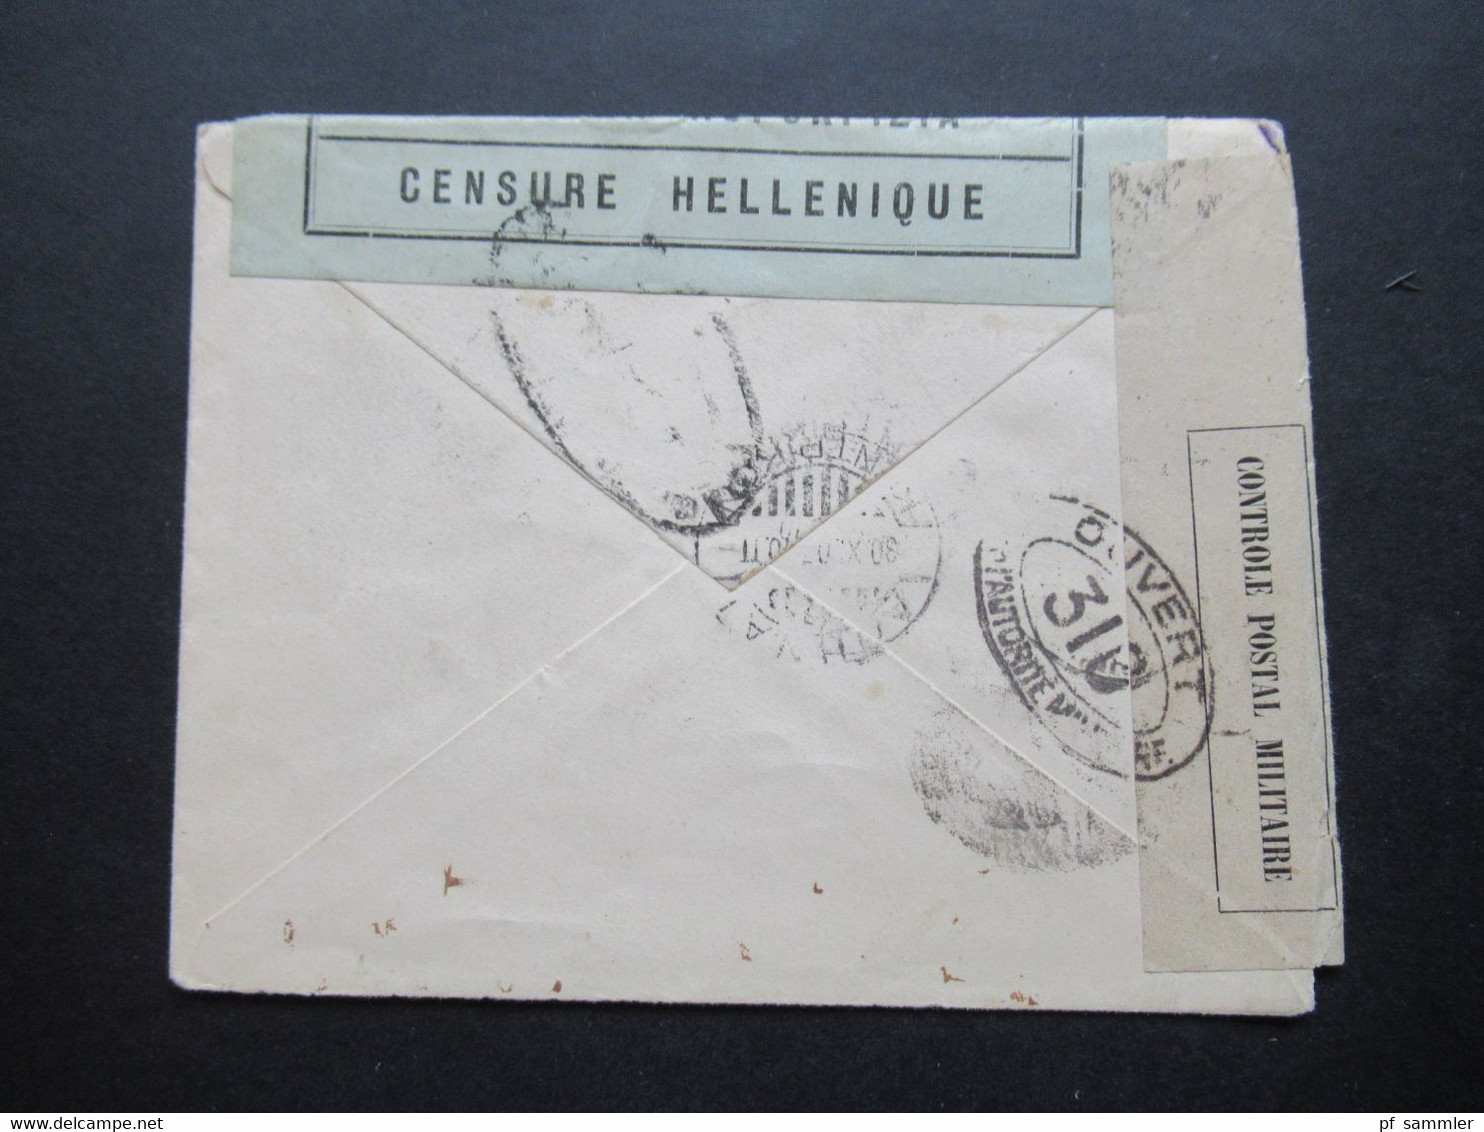 1916 Freimarken mit Aufdruck E.T. Nr. 217 EF Zensurbeleg in die Schweiz Mehrfachzensur V Stempel / Censure Hellenique